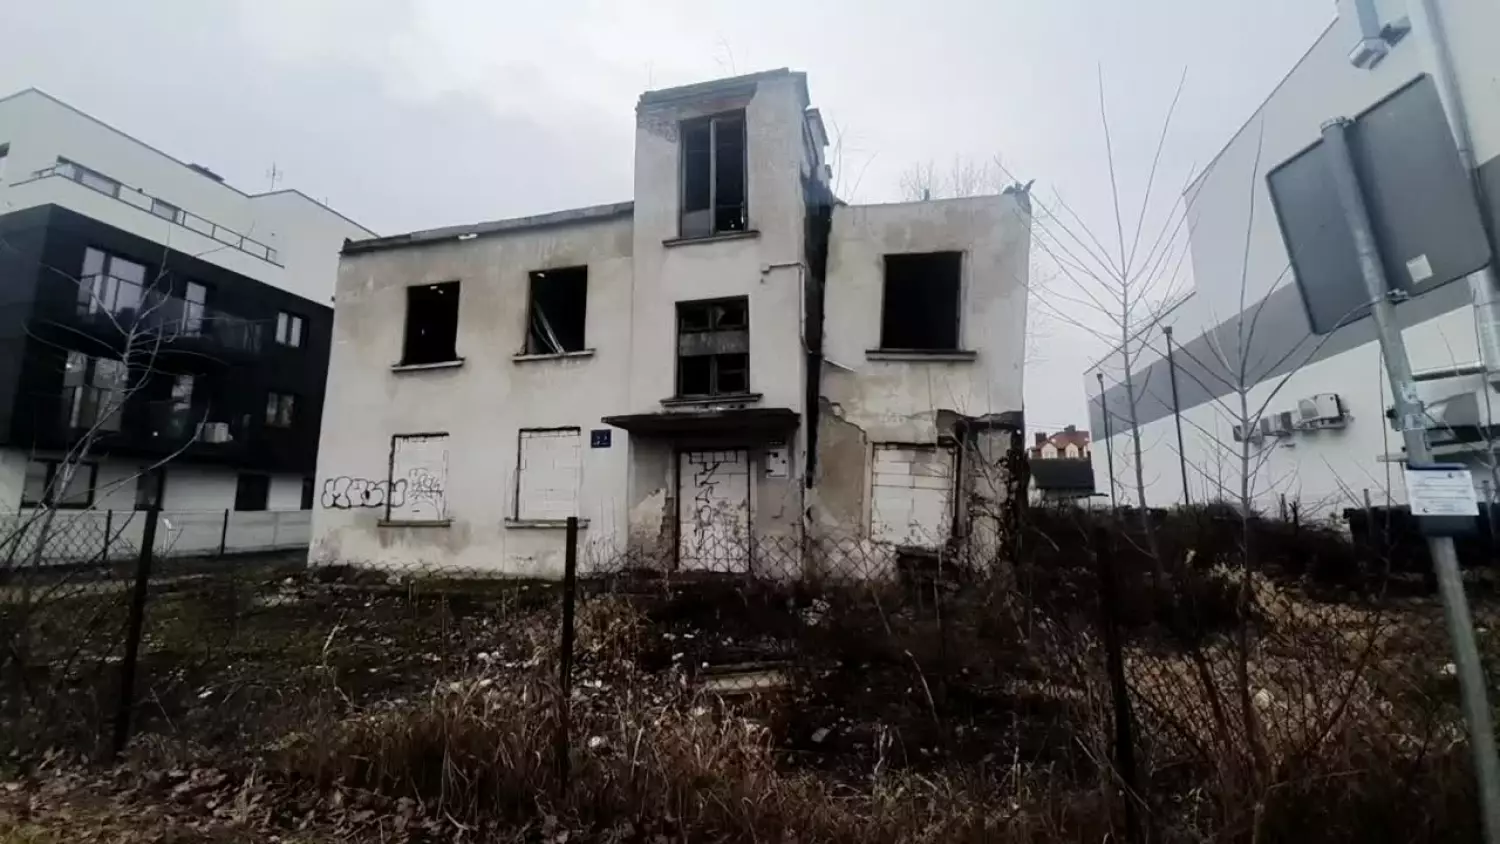 Krzywy dom w Piasecznie straszy przechodniów